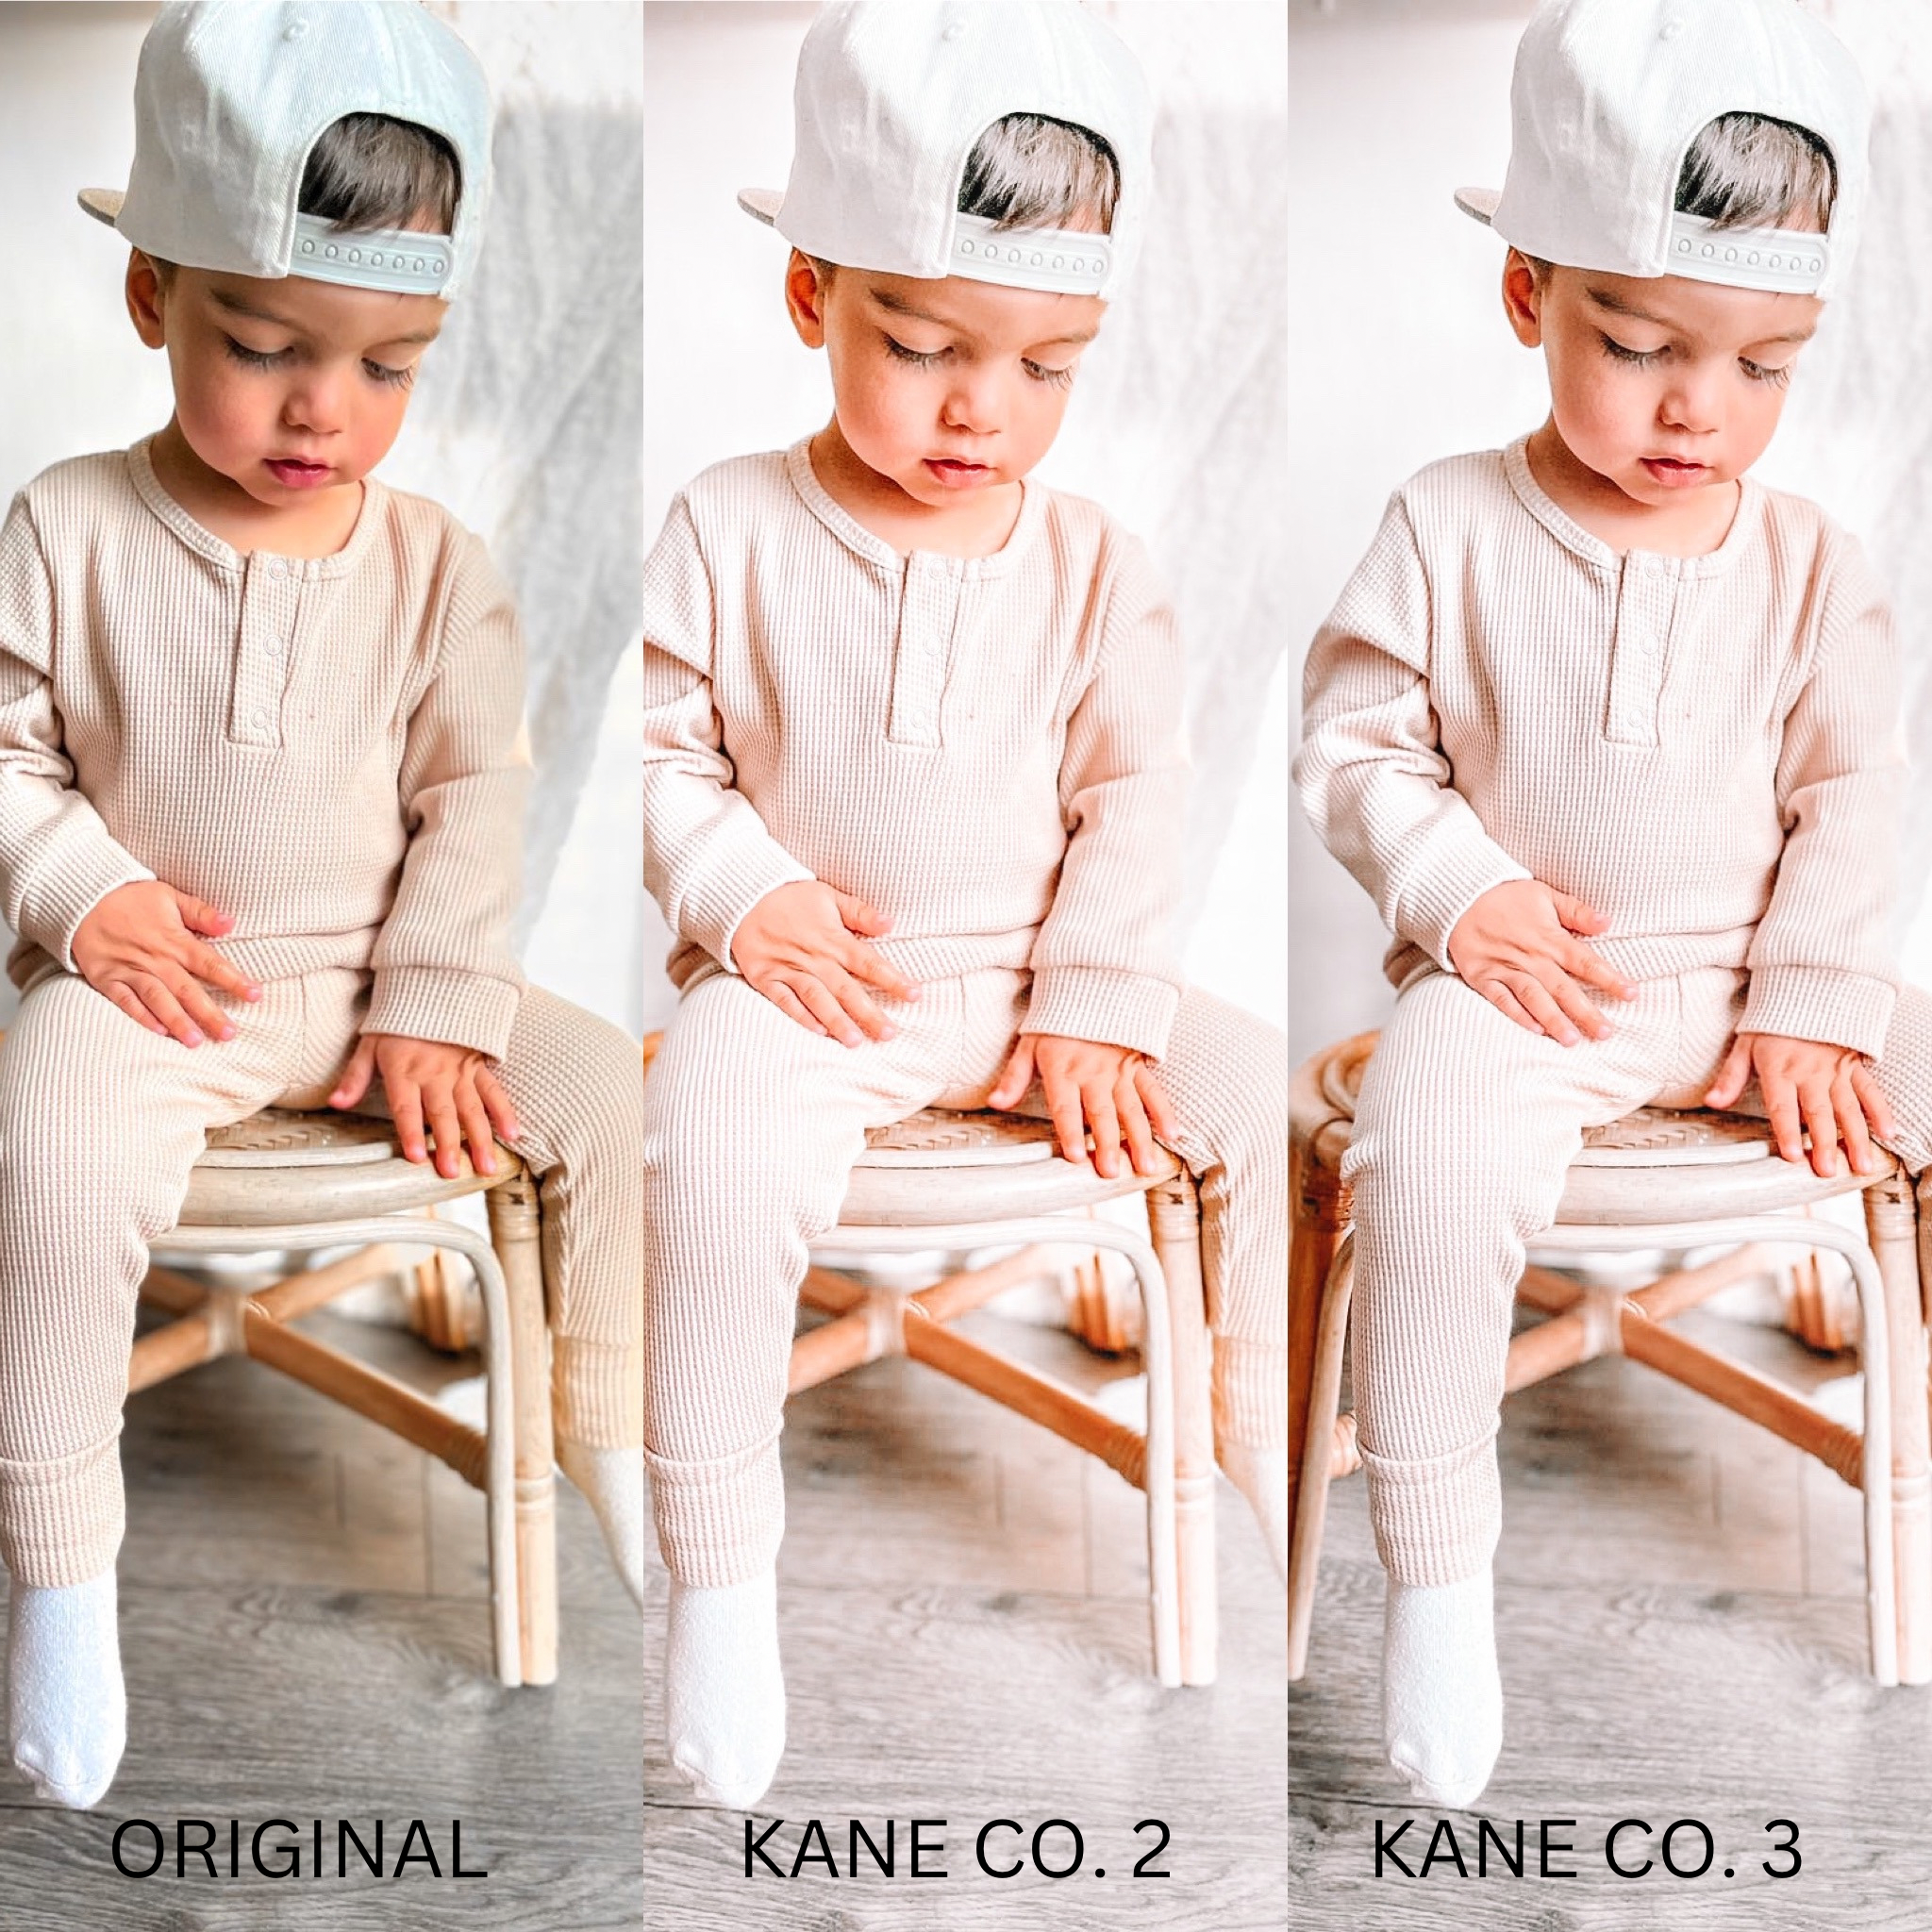 Kane Co. Clothing Presets